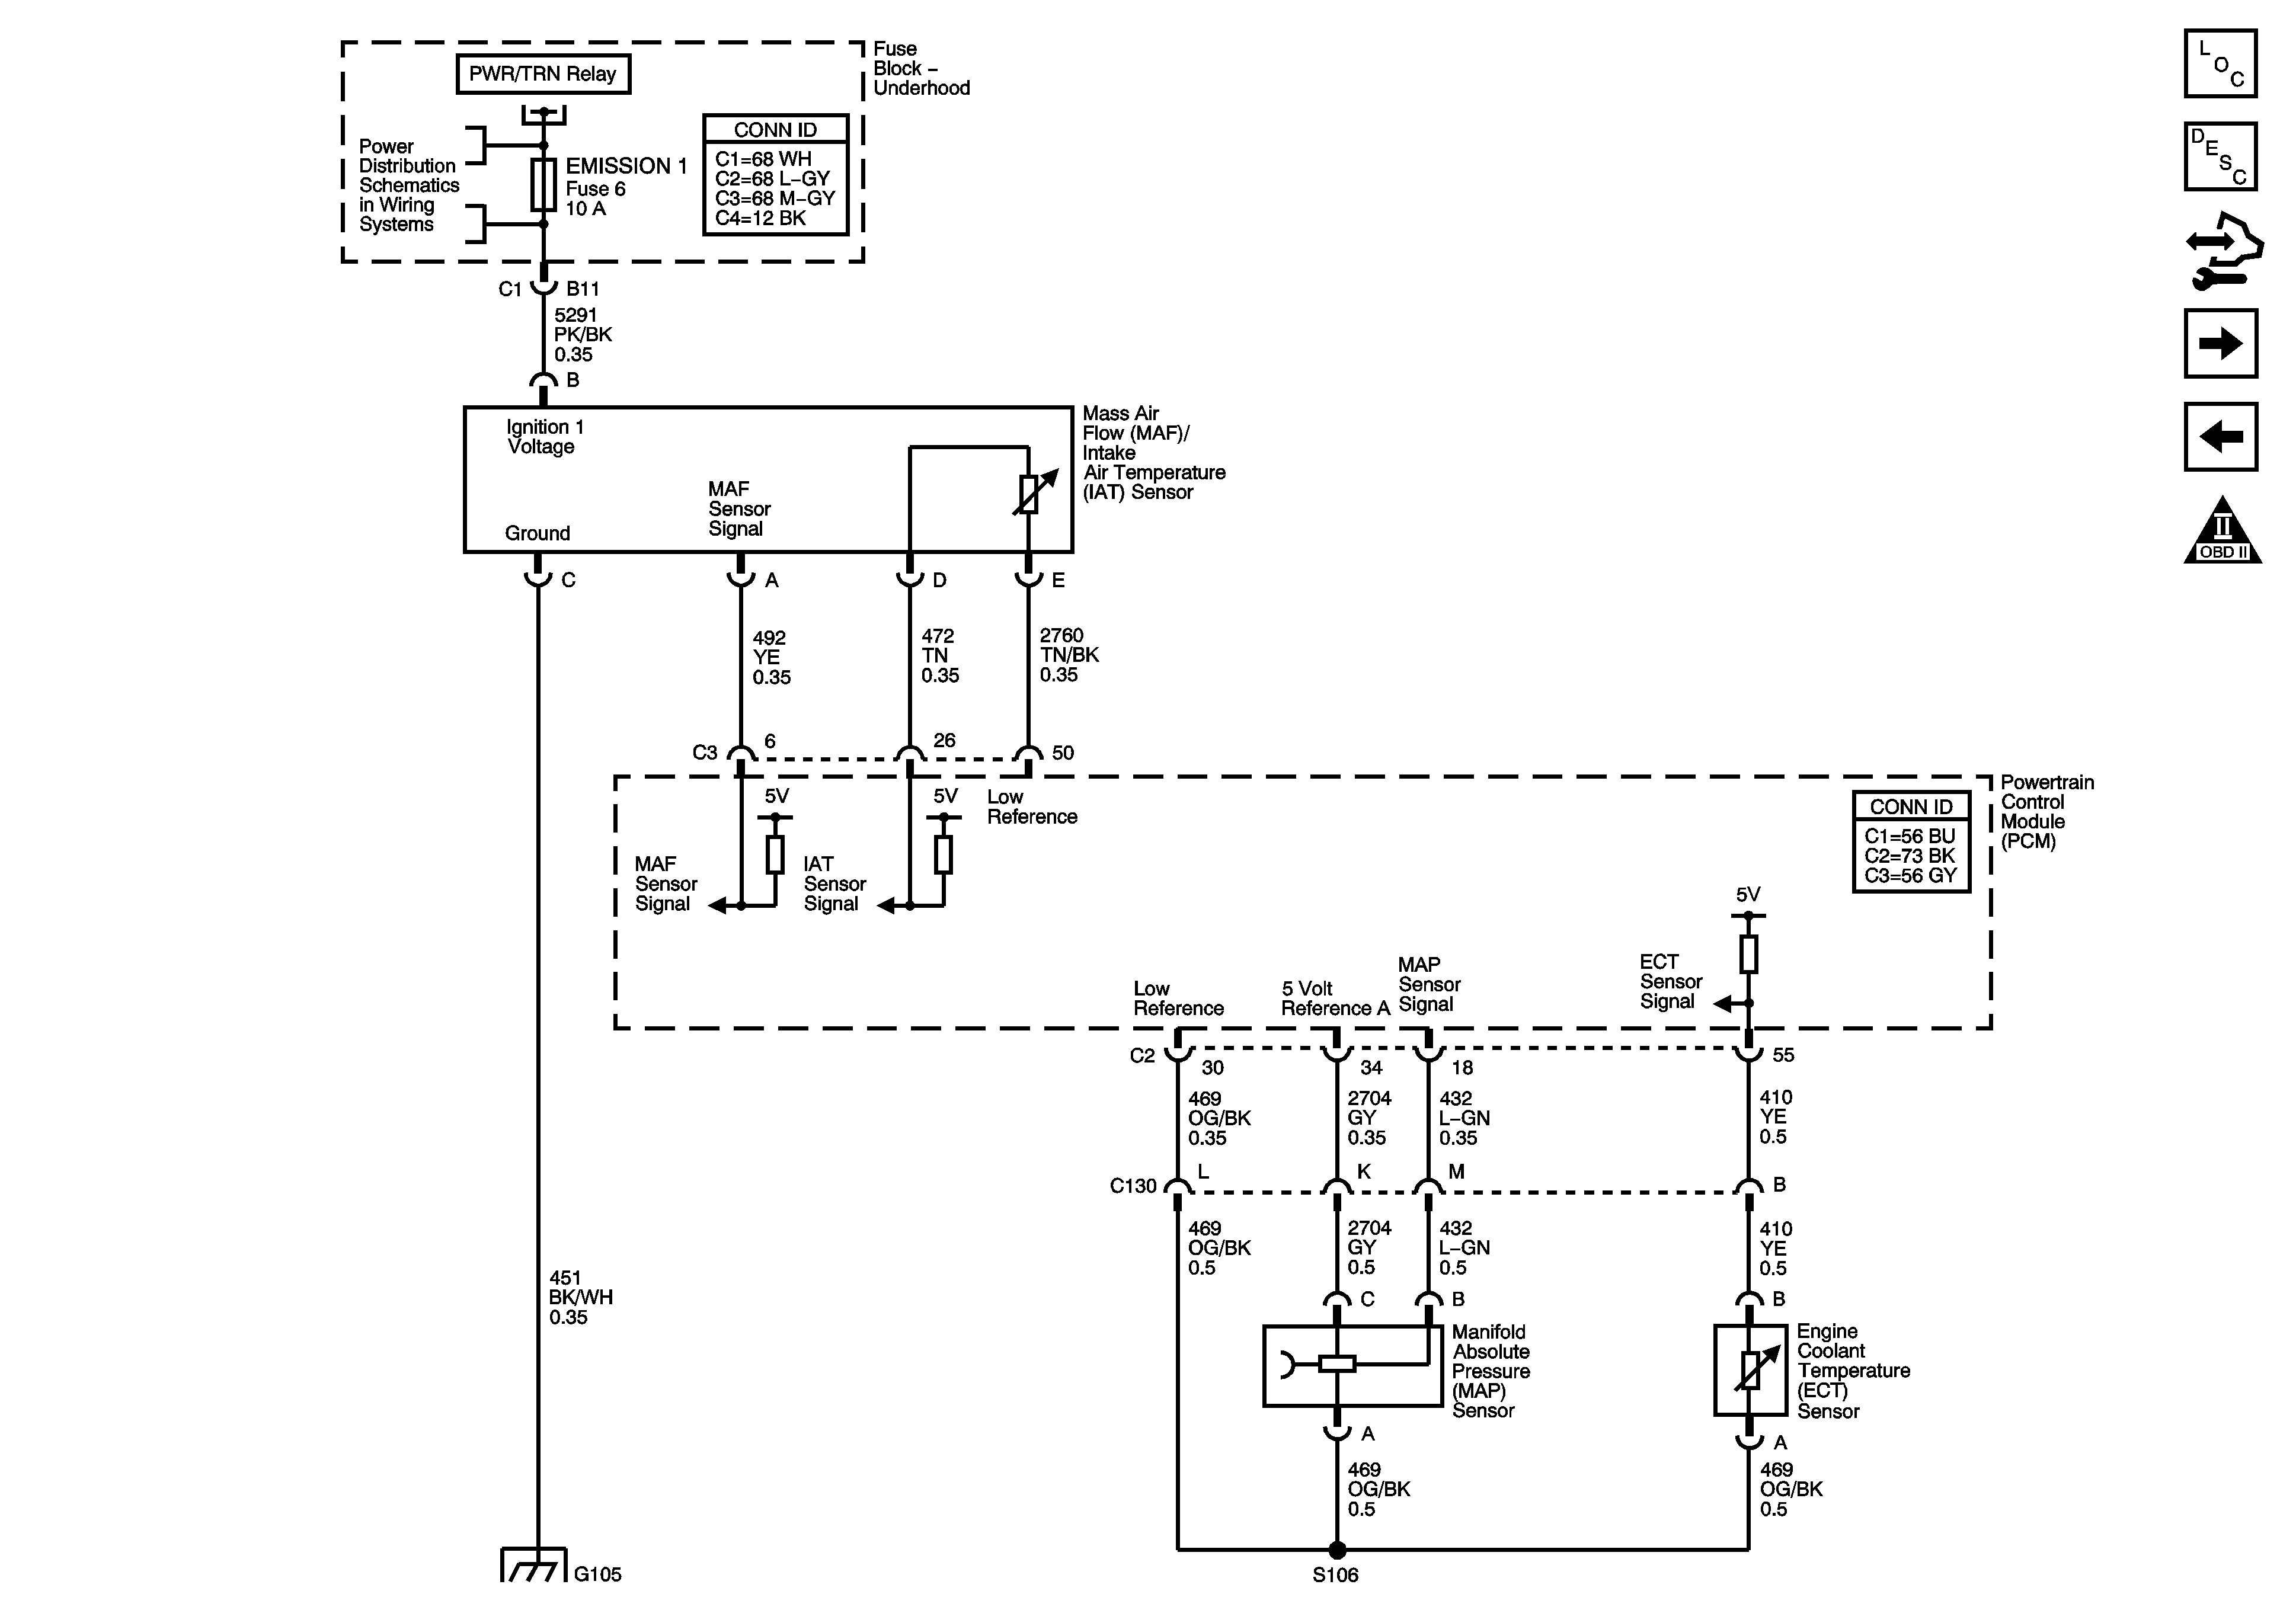 Pontiac G6 Engine Diagram